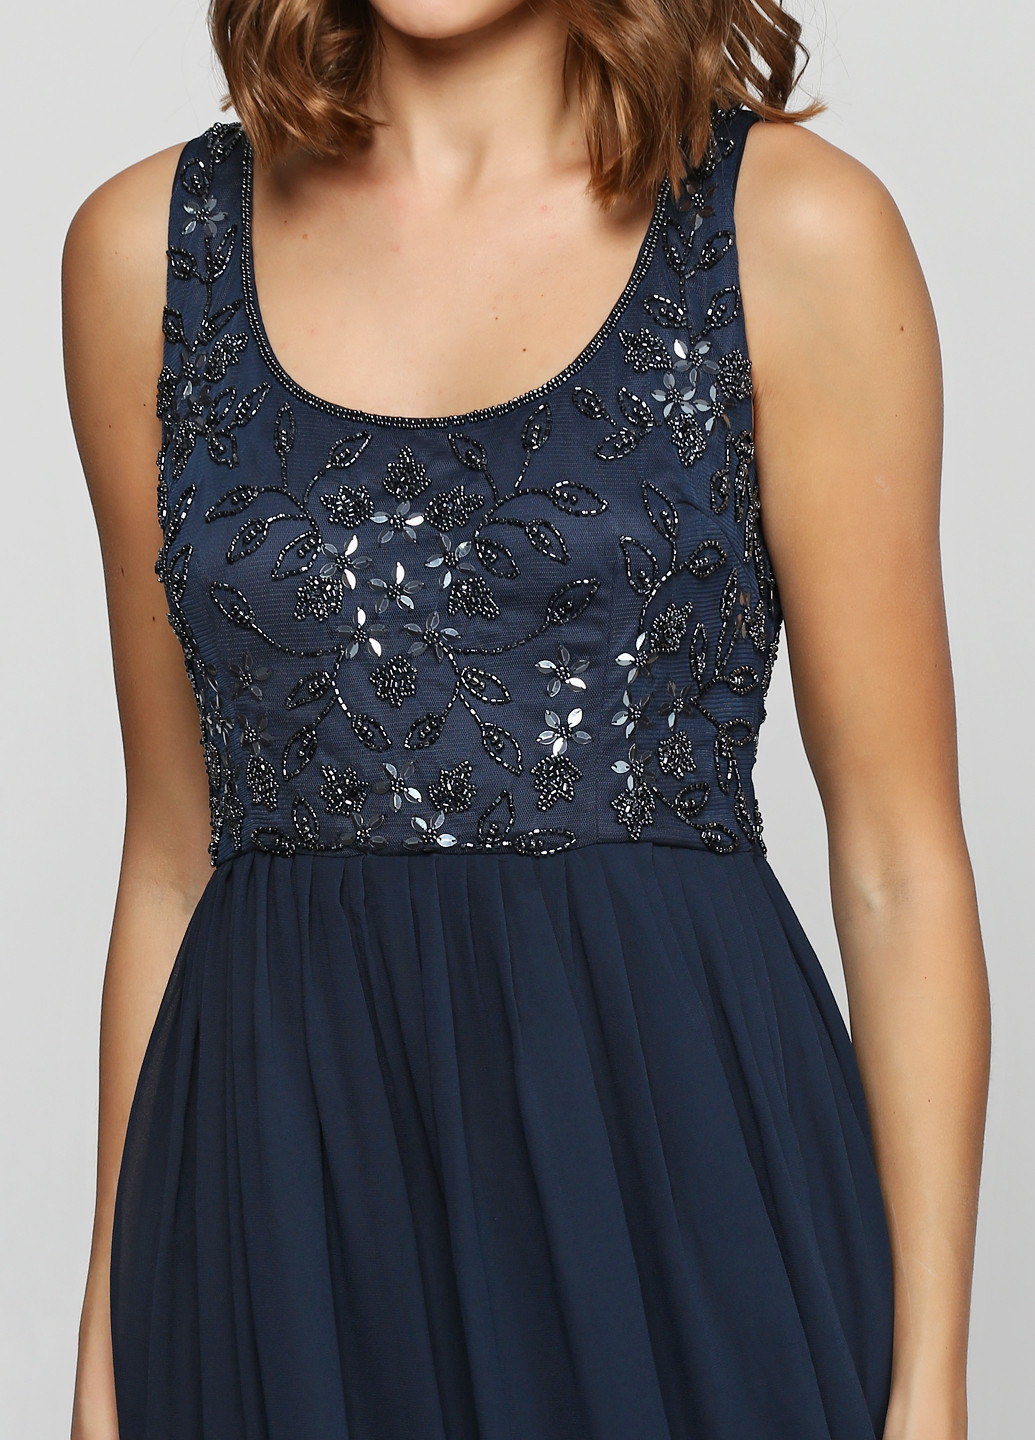 Синя вечірня сукня довга Lace & Beads однотонна